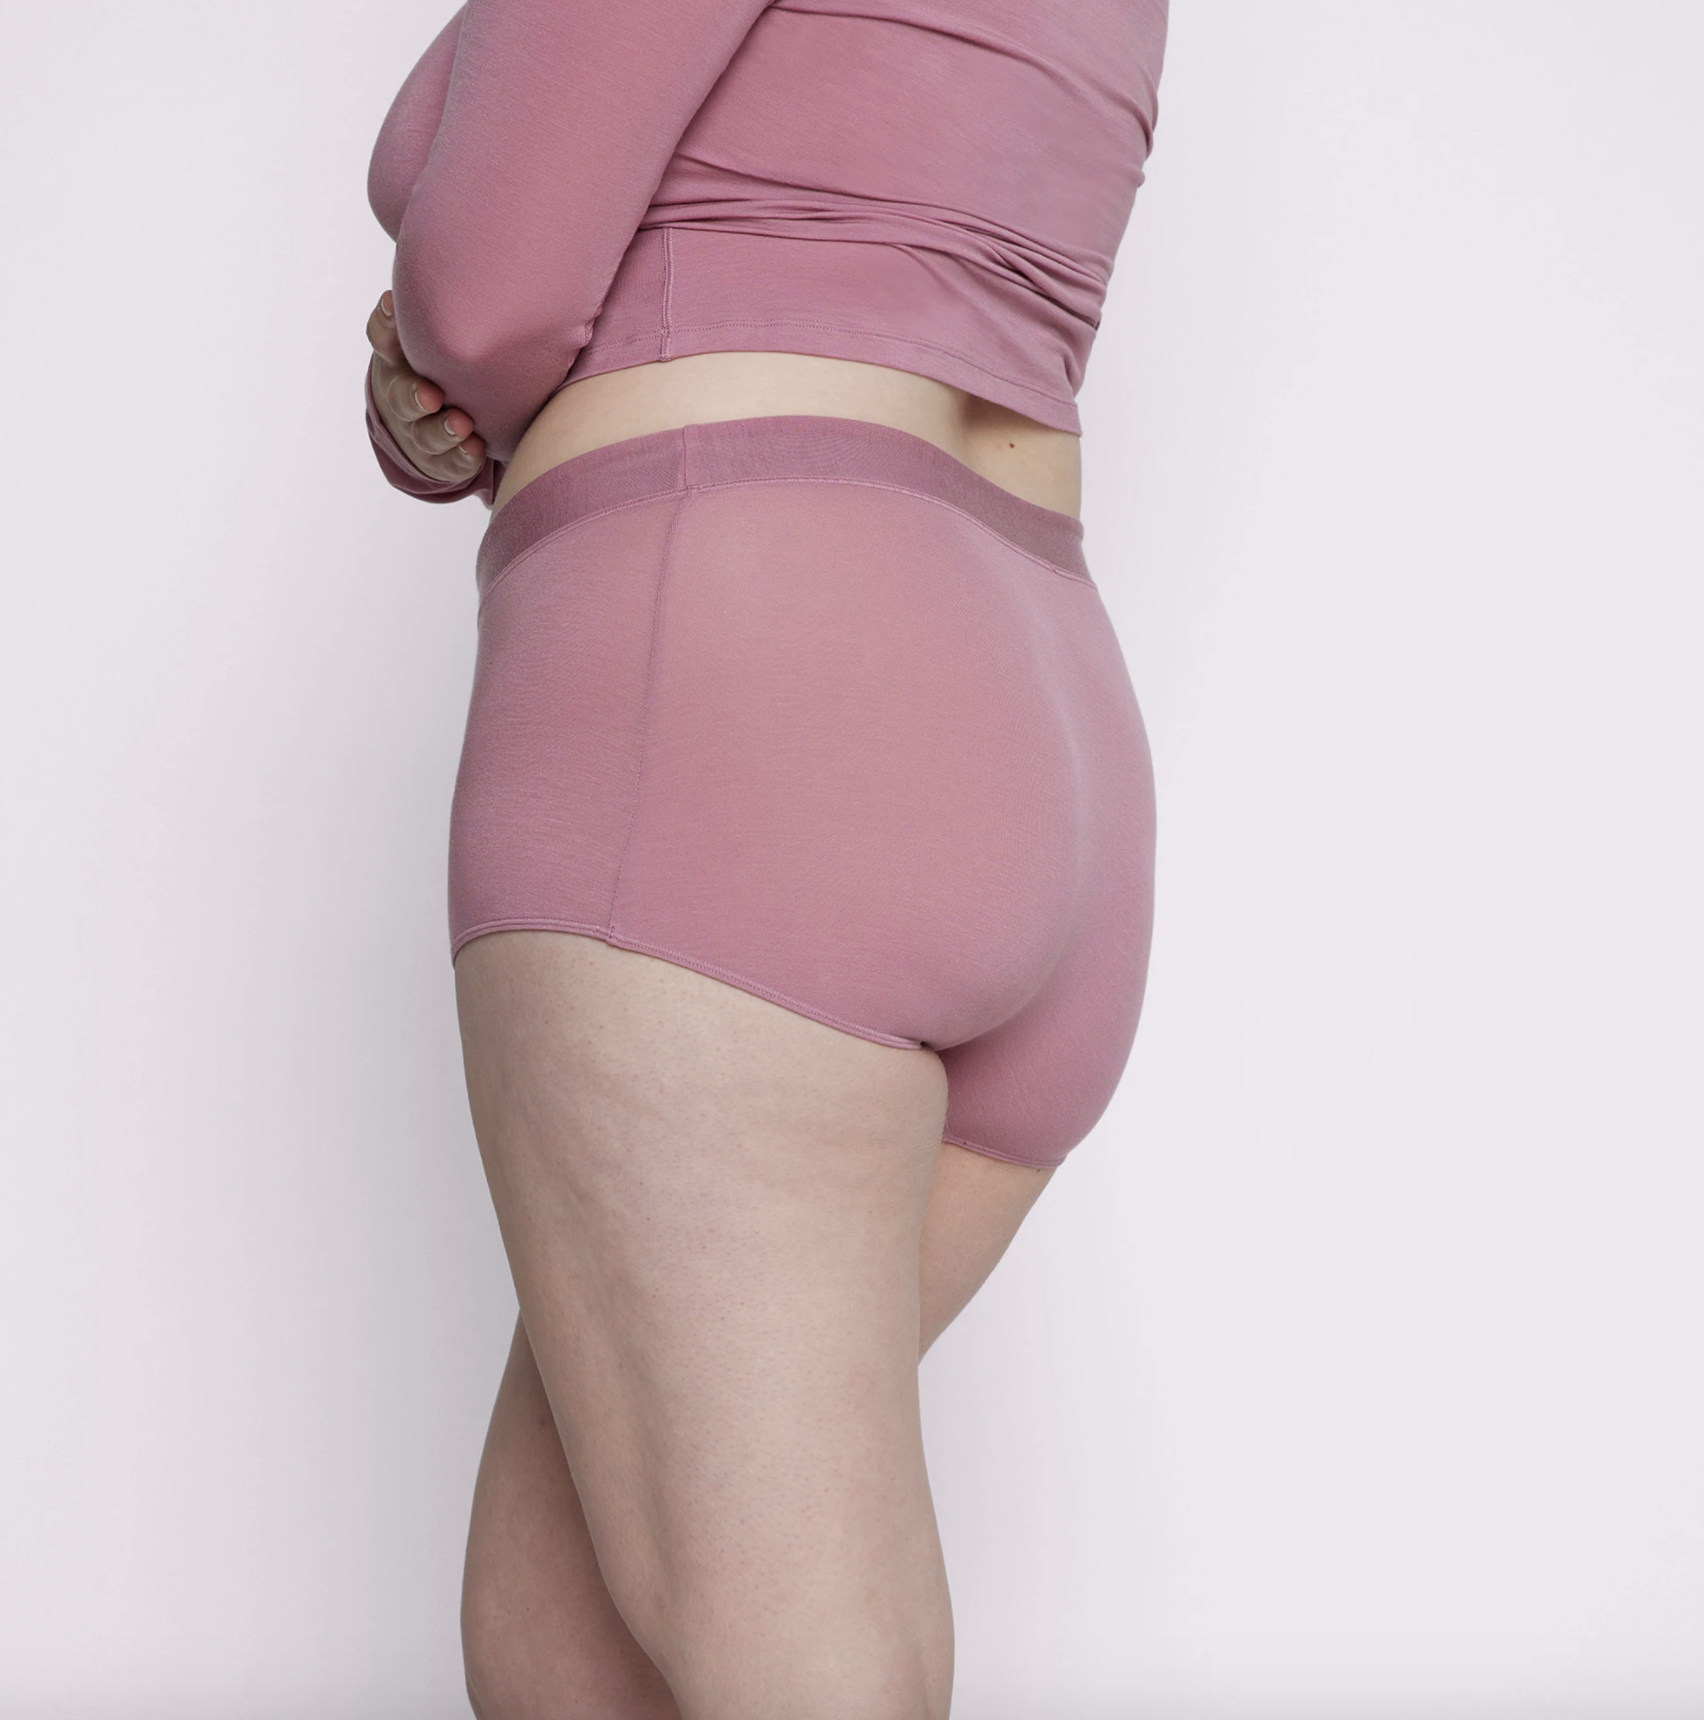 30 Best Women's Underwear 2022 ...